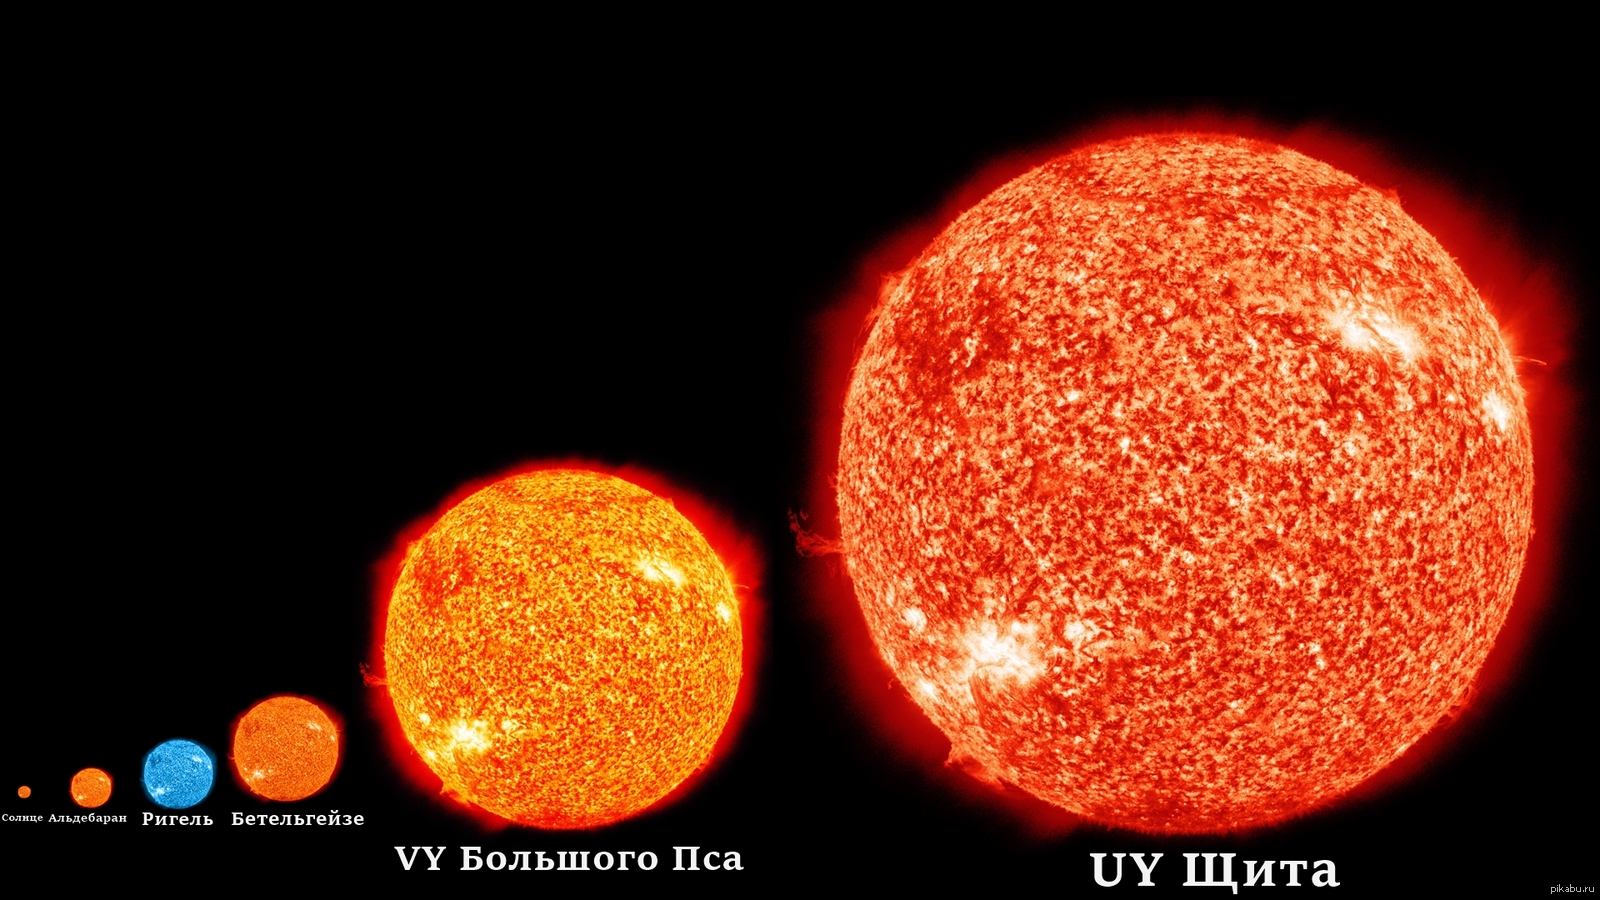 Планета альдебаран. R136a1 и Бетельгейзе. Uy щита и Бетельгейзе. Альдебаран и Бетельгейзе. Самая большая звезда uy щита.